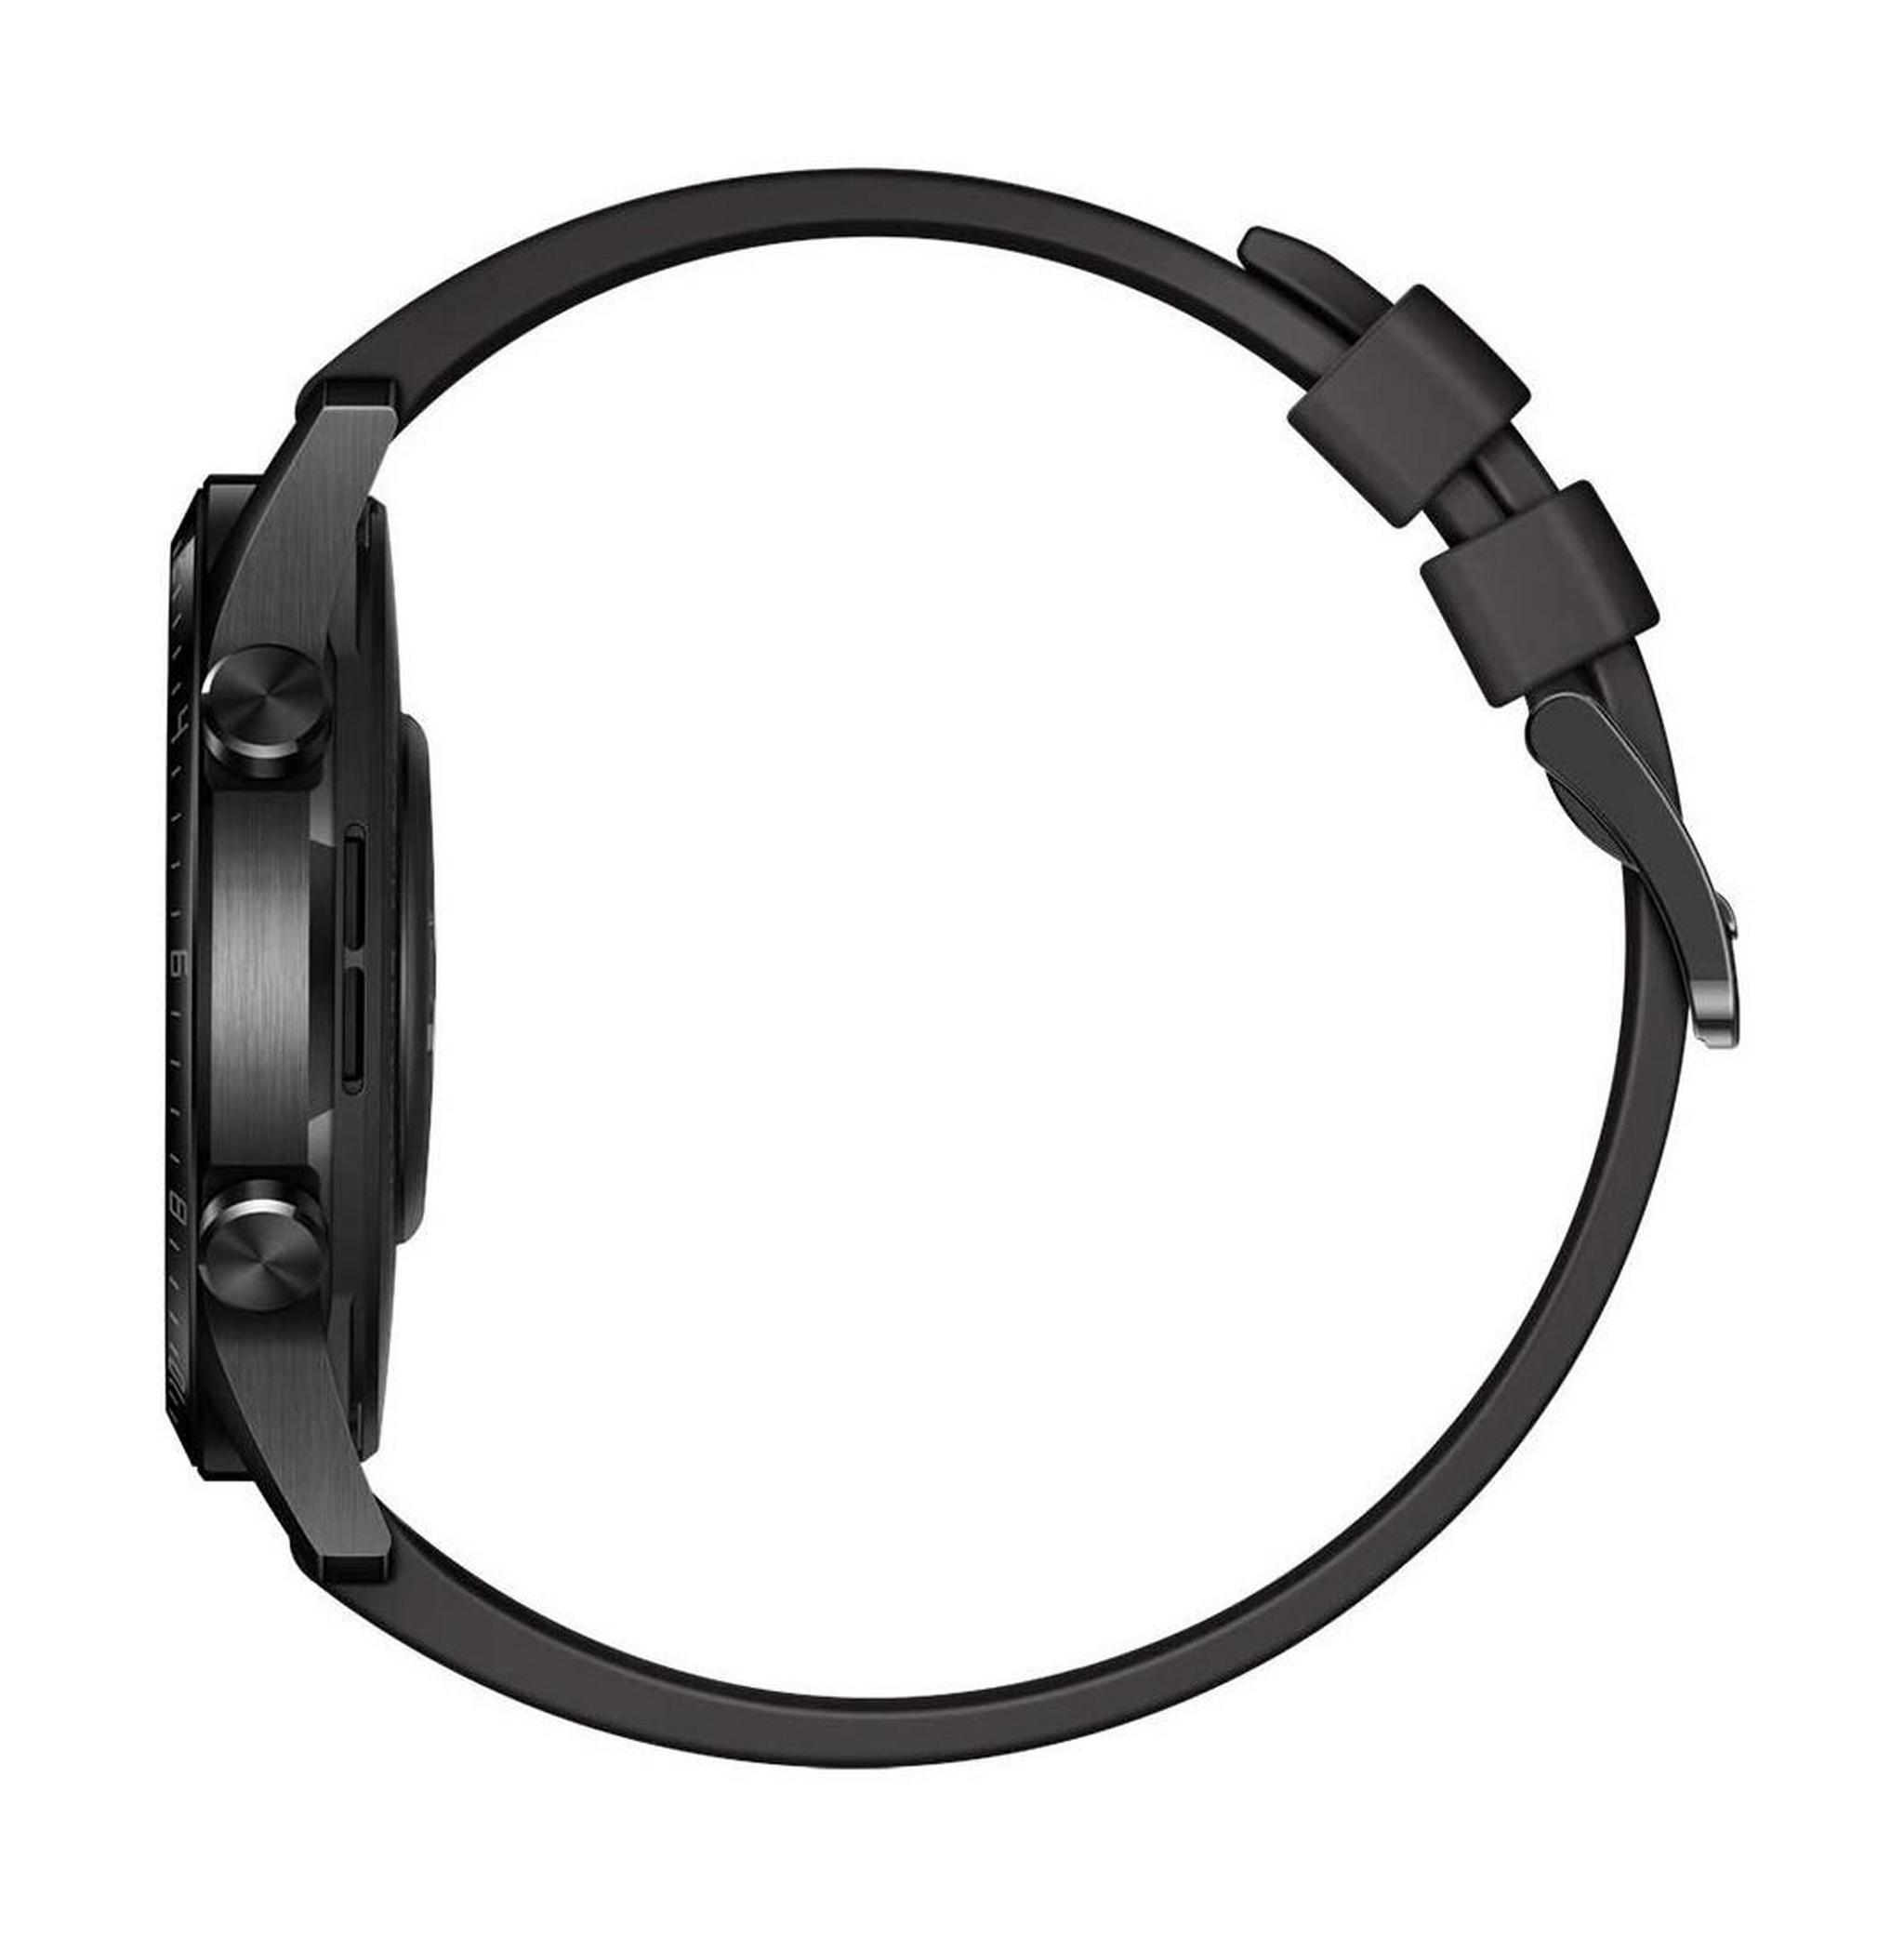 Huawei Watch GT 2 46mm Smart Watch - Matte Black